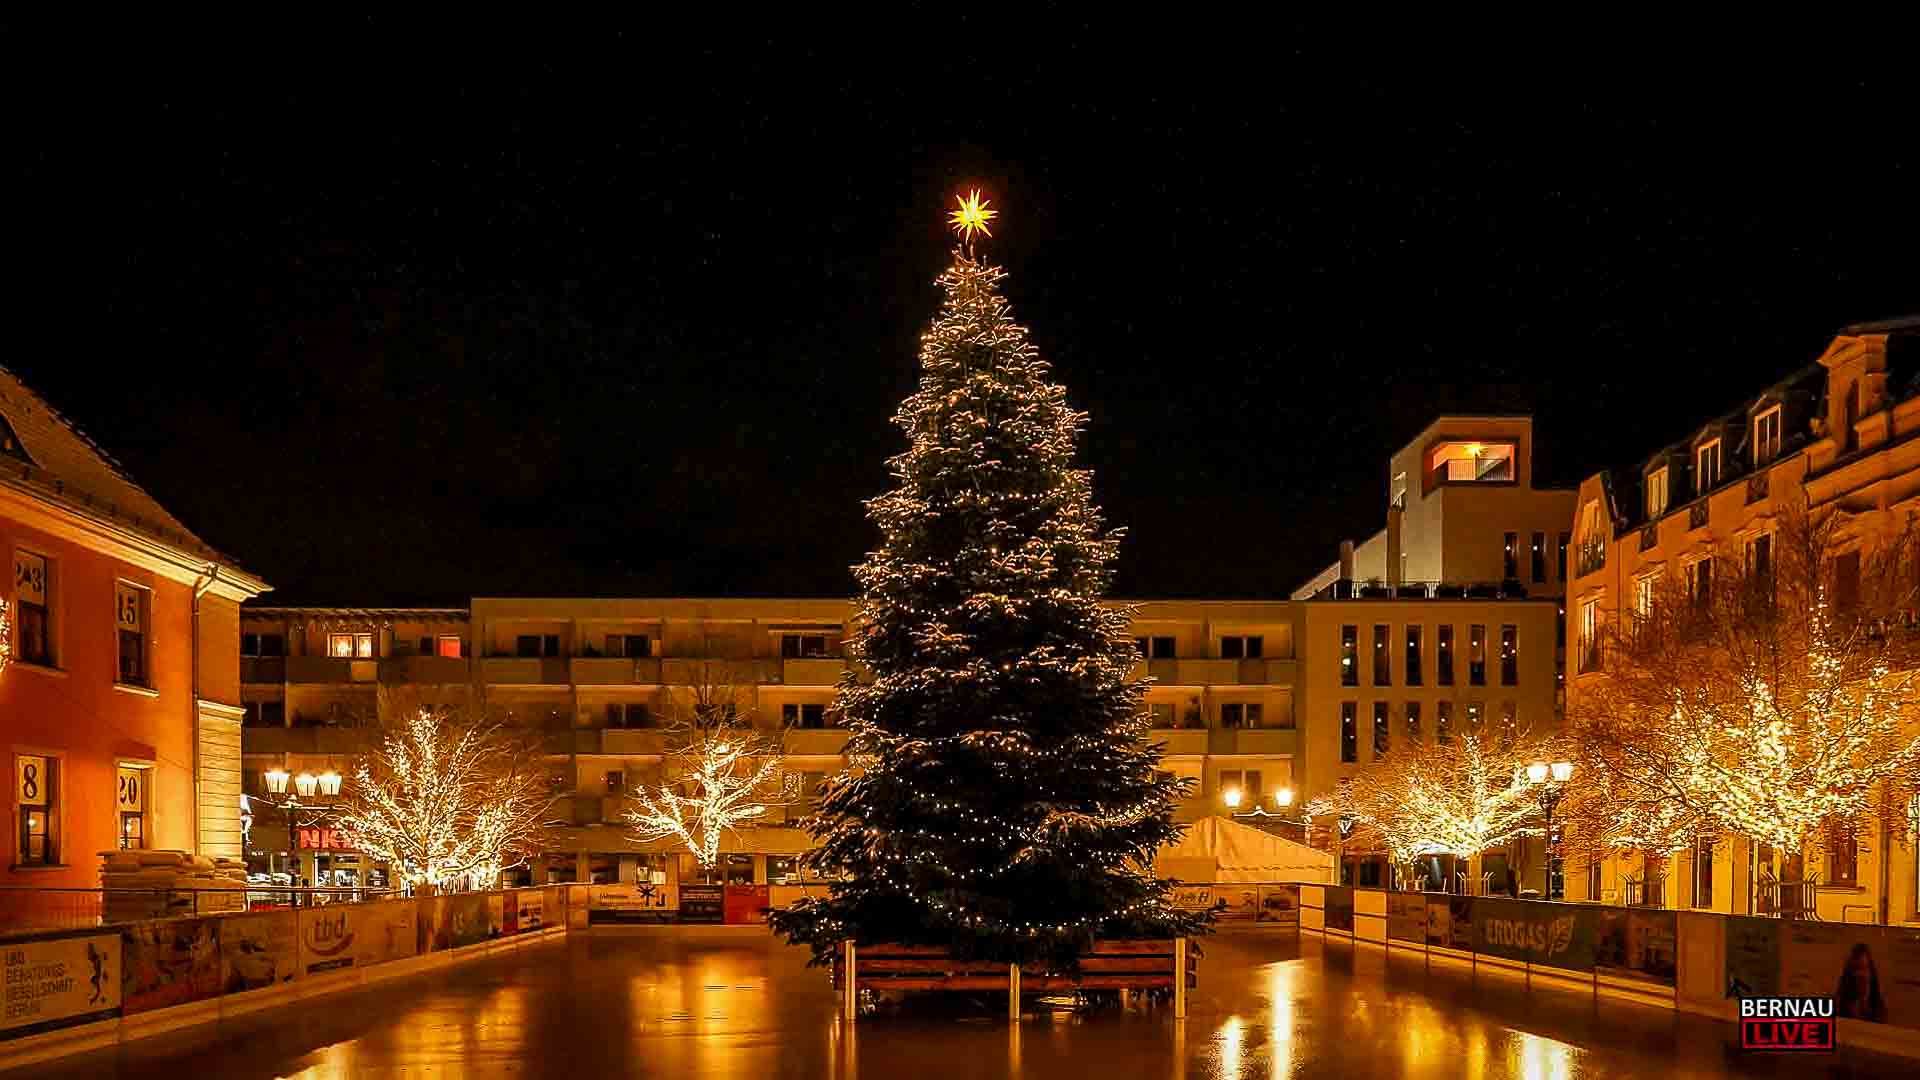 Bernau sucht den schönsten Weihnachtsbaum für den Marktplatz